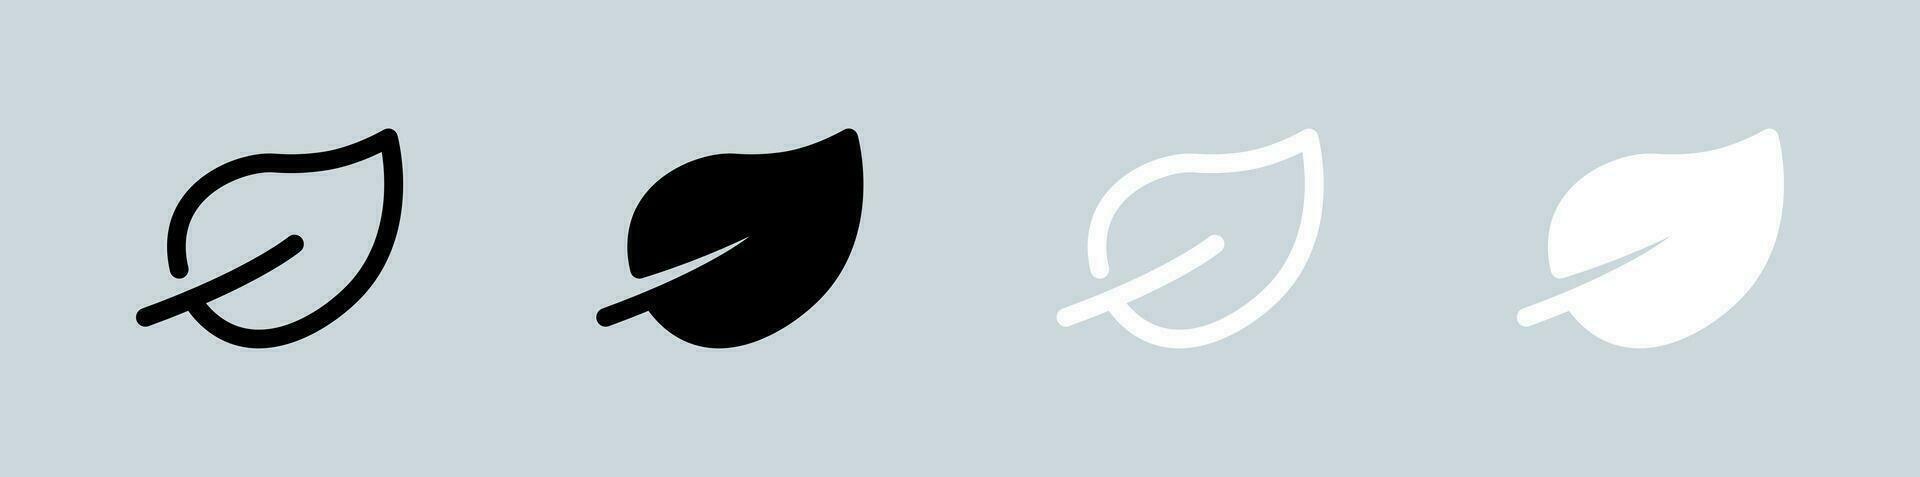 miljö- ikon uppsättning i svart och vit. eco tecken vektor illustration.